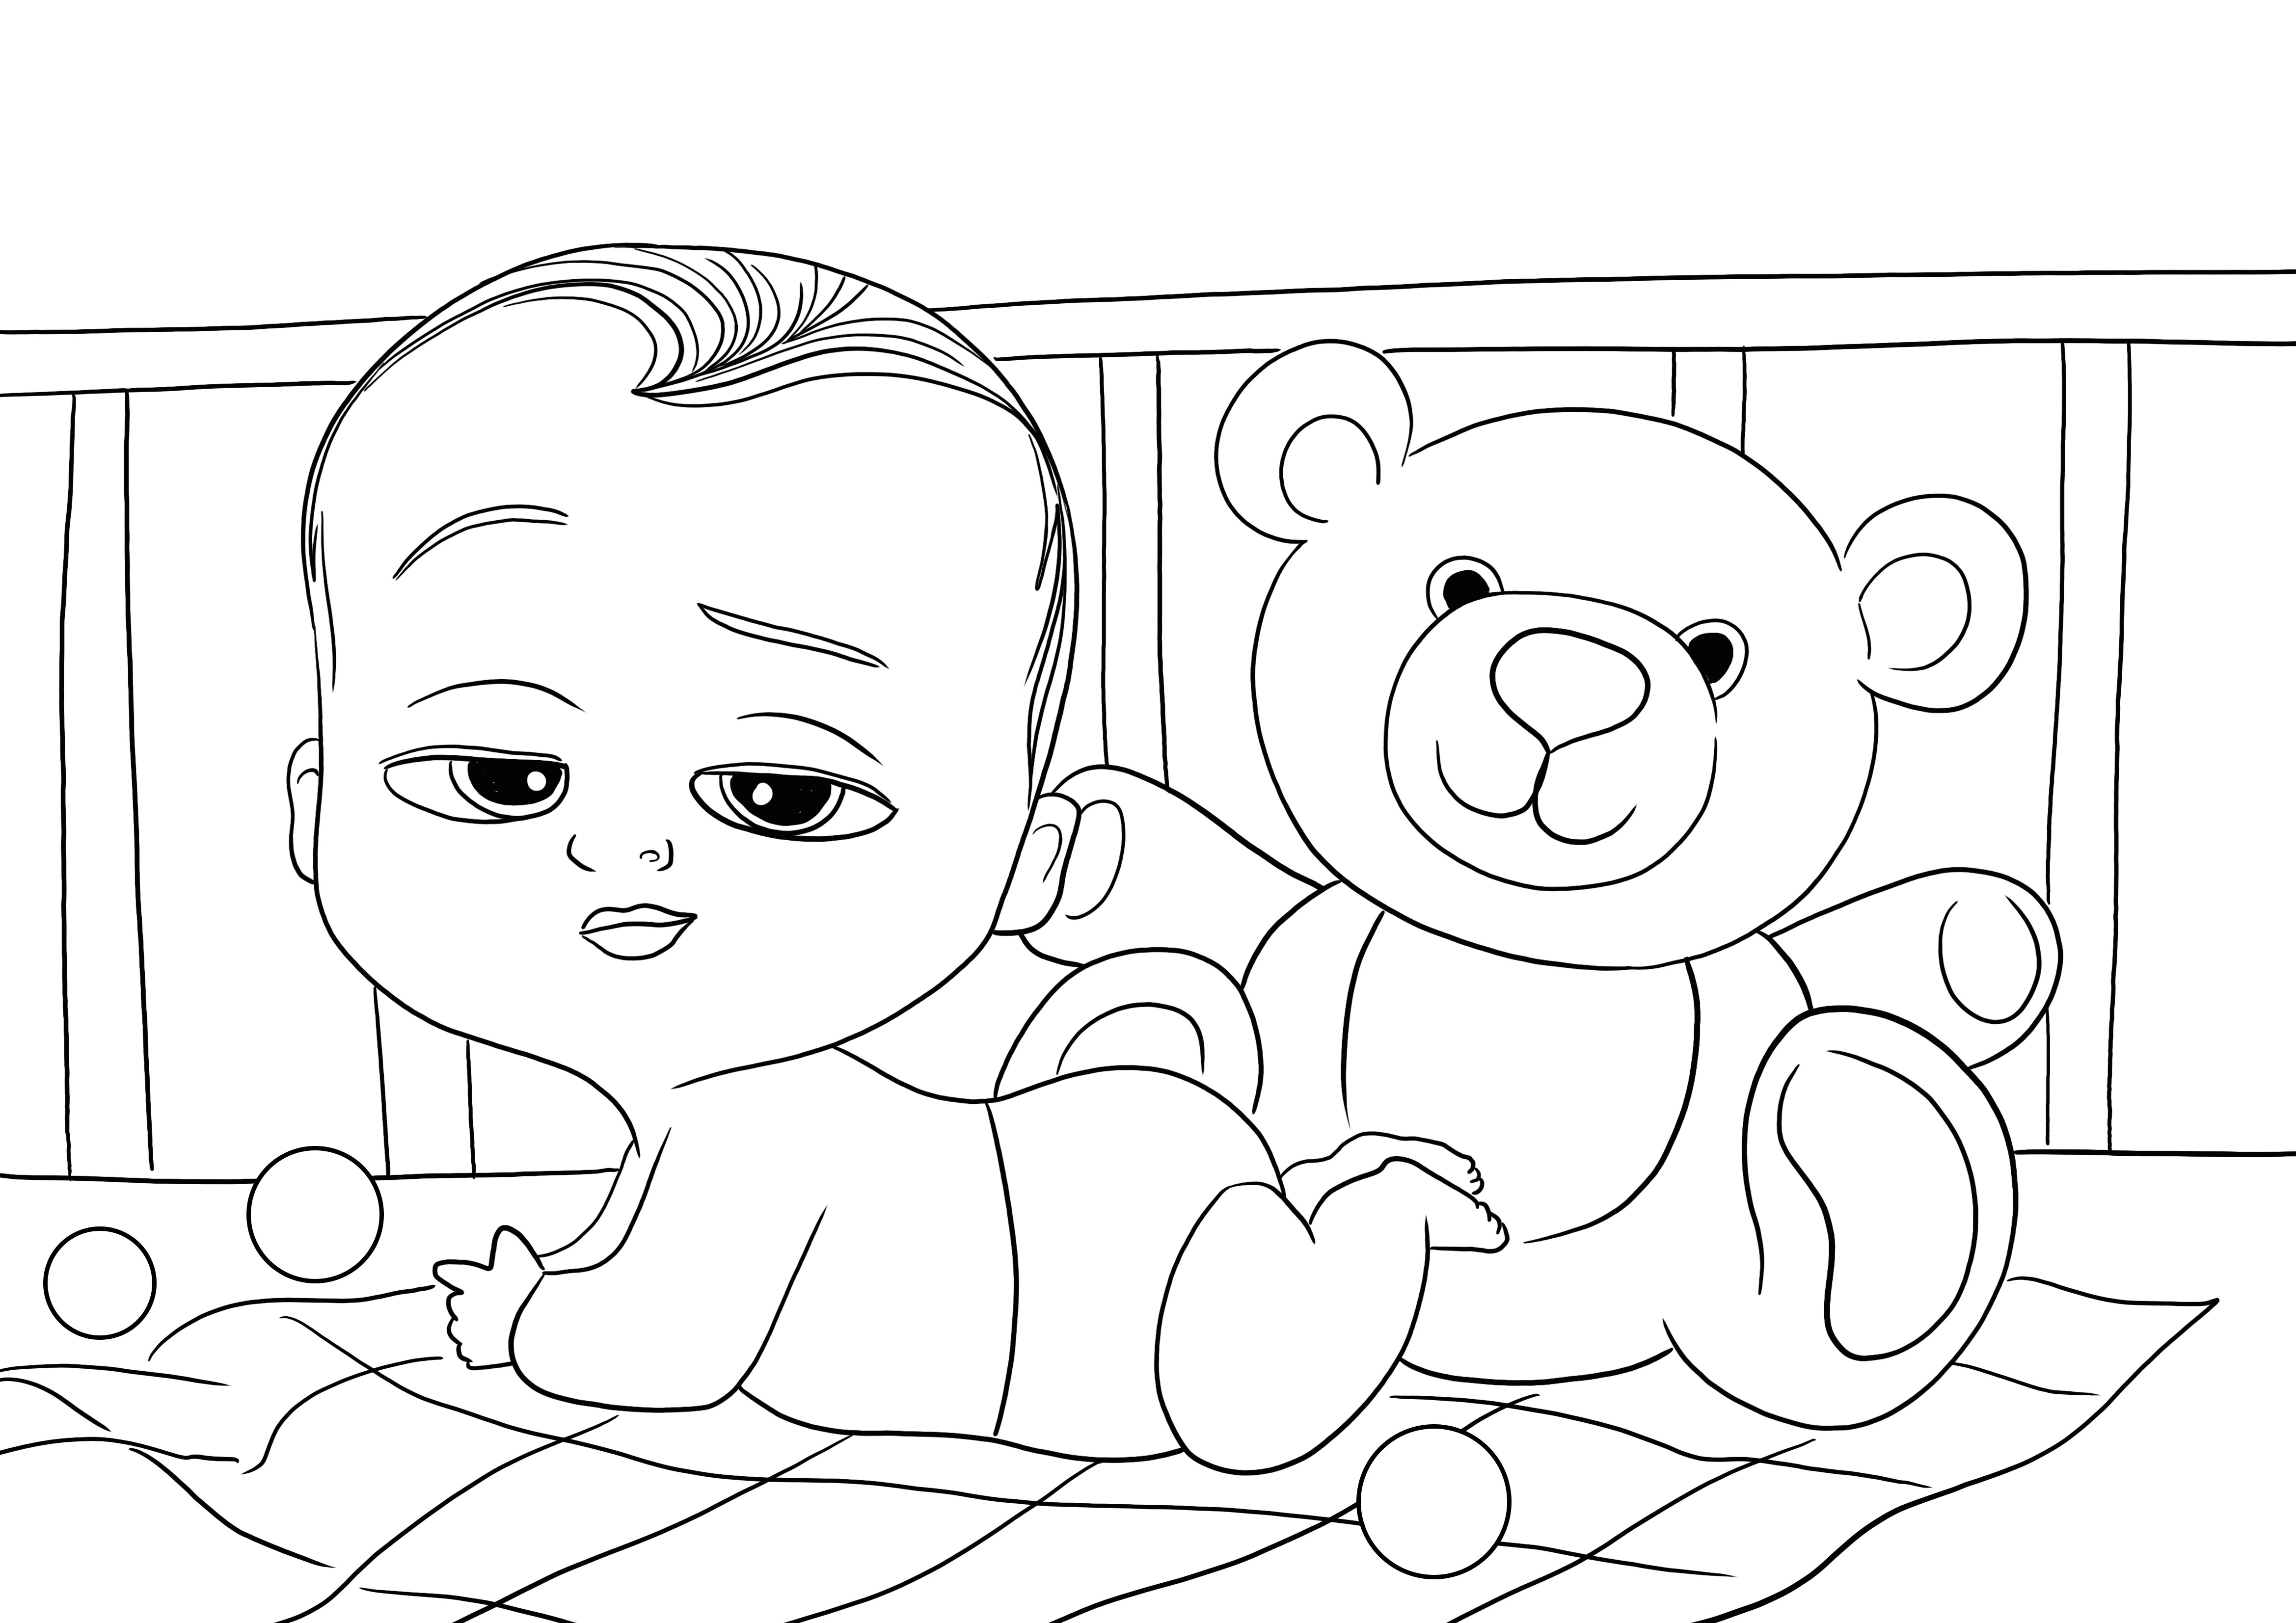 Coloriage gratuit à télécharger de Baby Boss et Teddy Bear à colorier